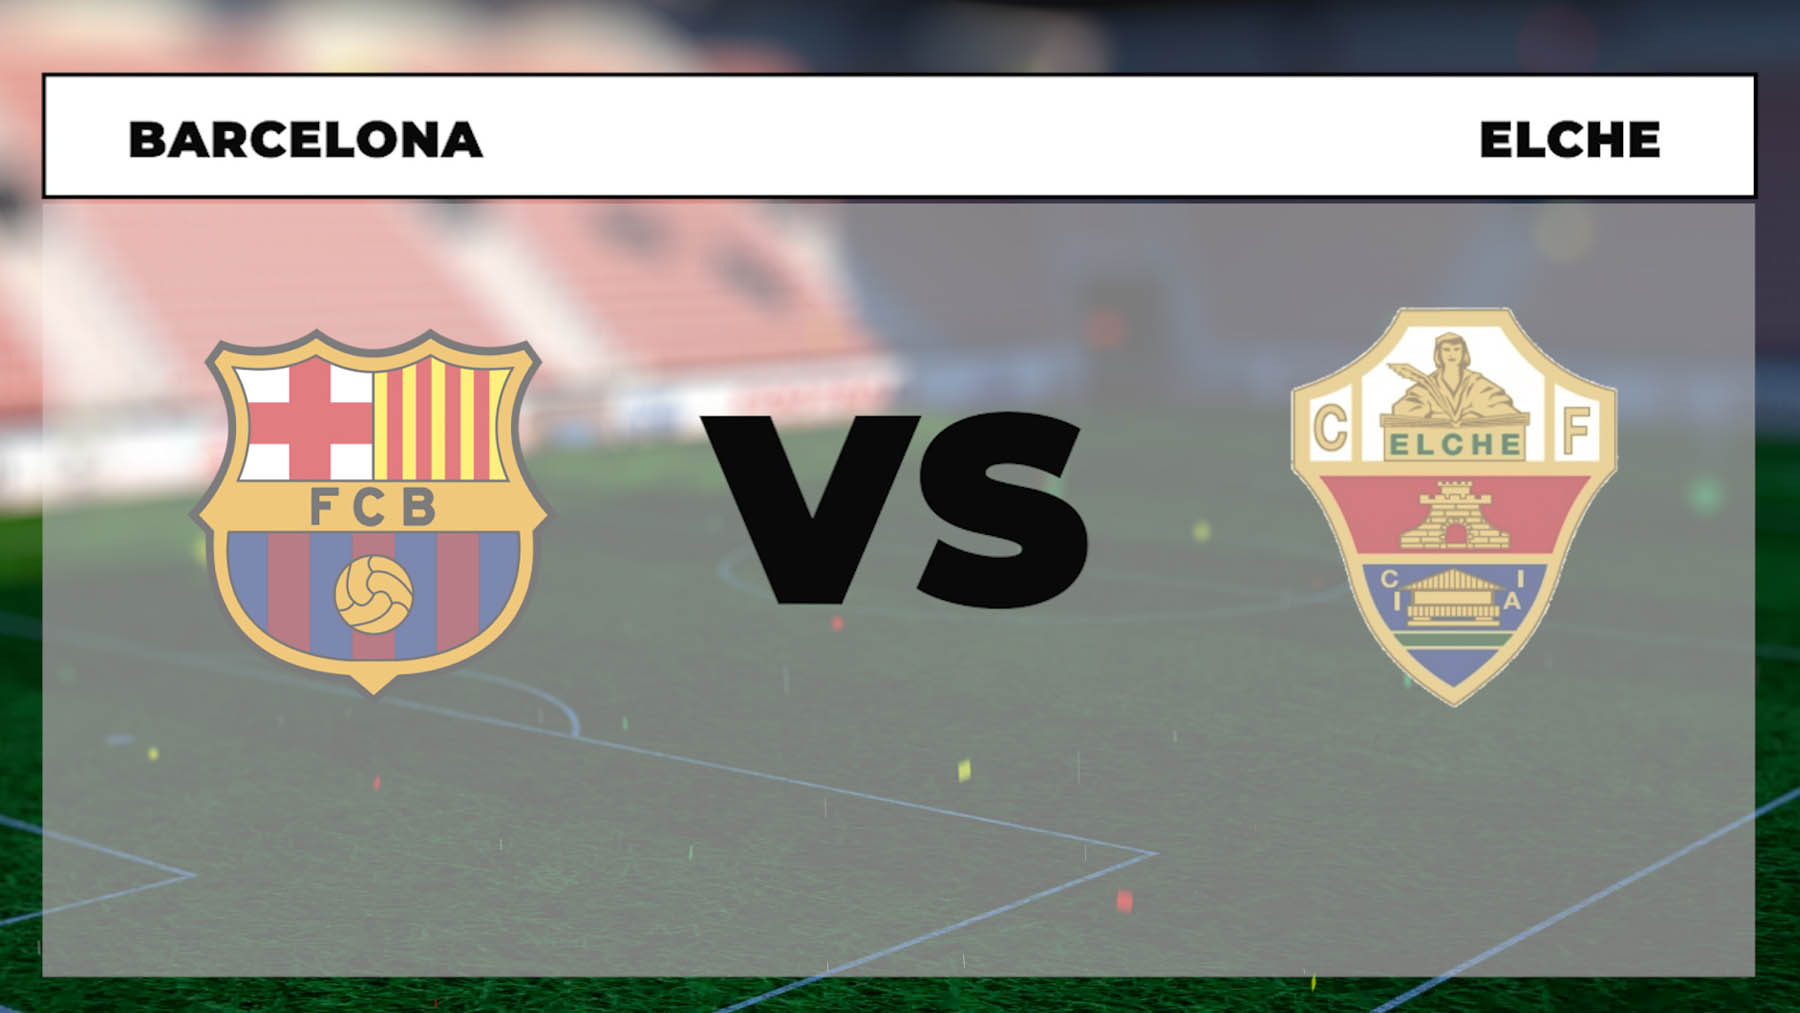 A qué hora juega el Barcelona contra el Elche y dónde ver el partido online en directo y por TV en vivo.